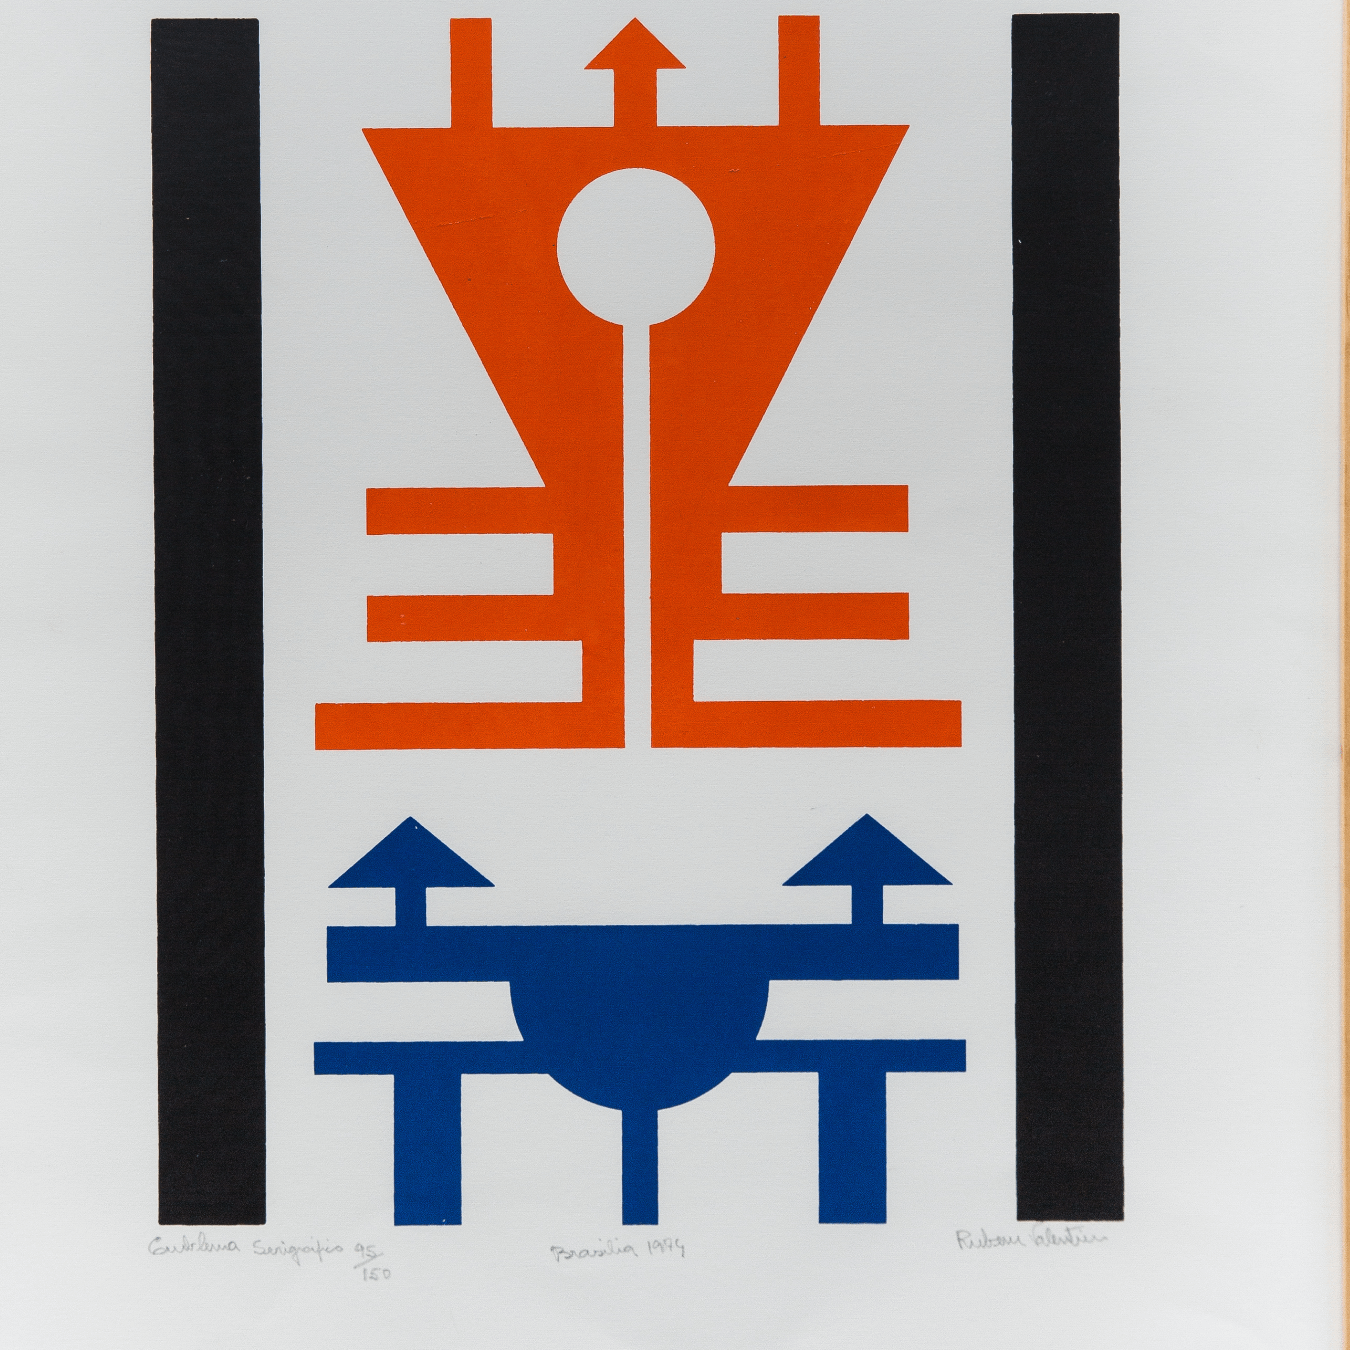 Serigrafia "Emblema Serigráfico" de Rubem Valentim de 1974